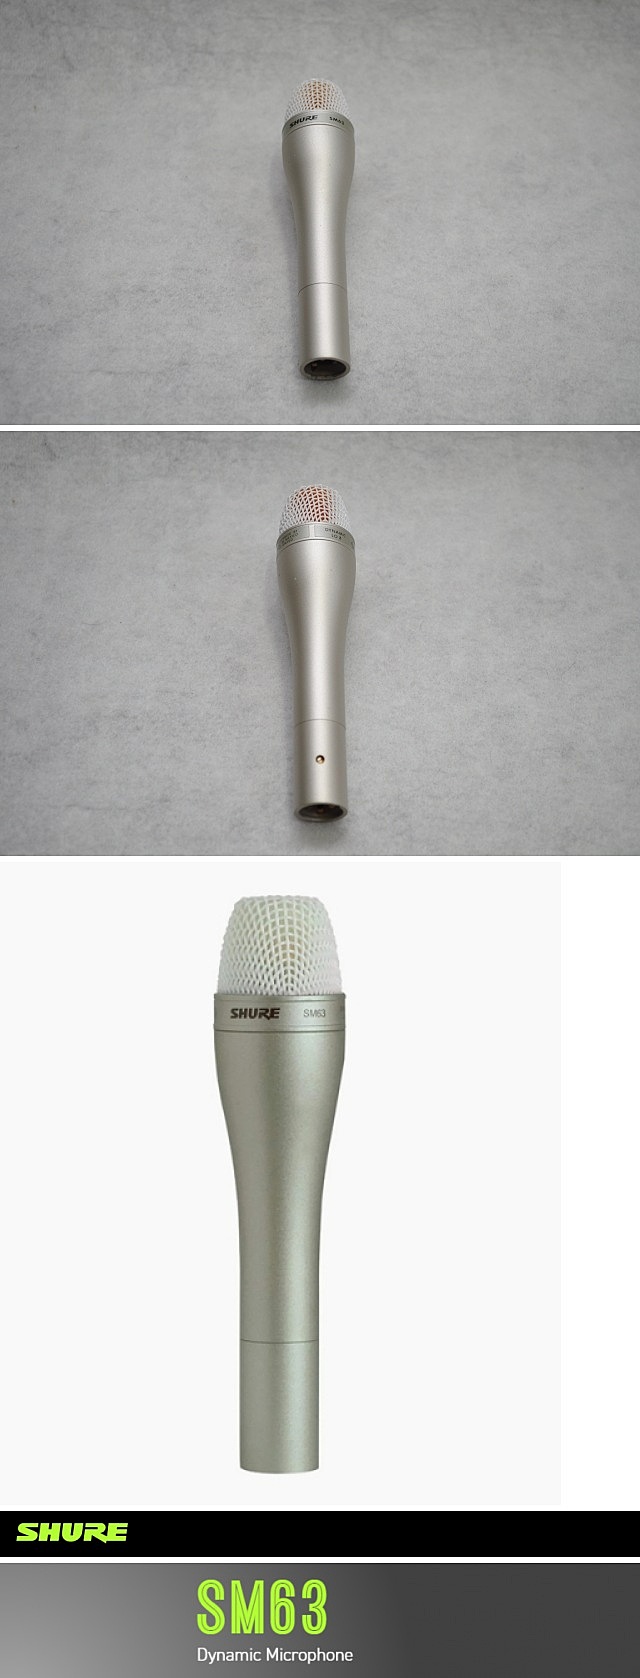 SHURE SM63 Microphone 1.jpg